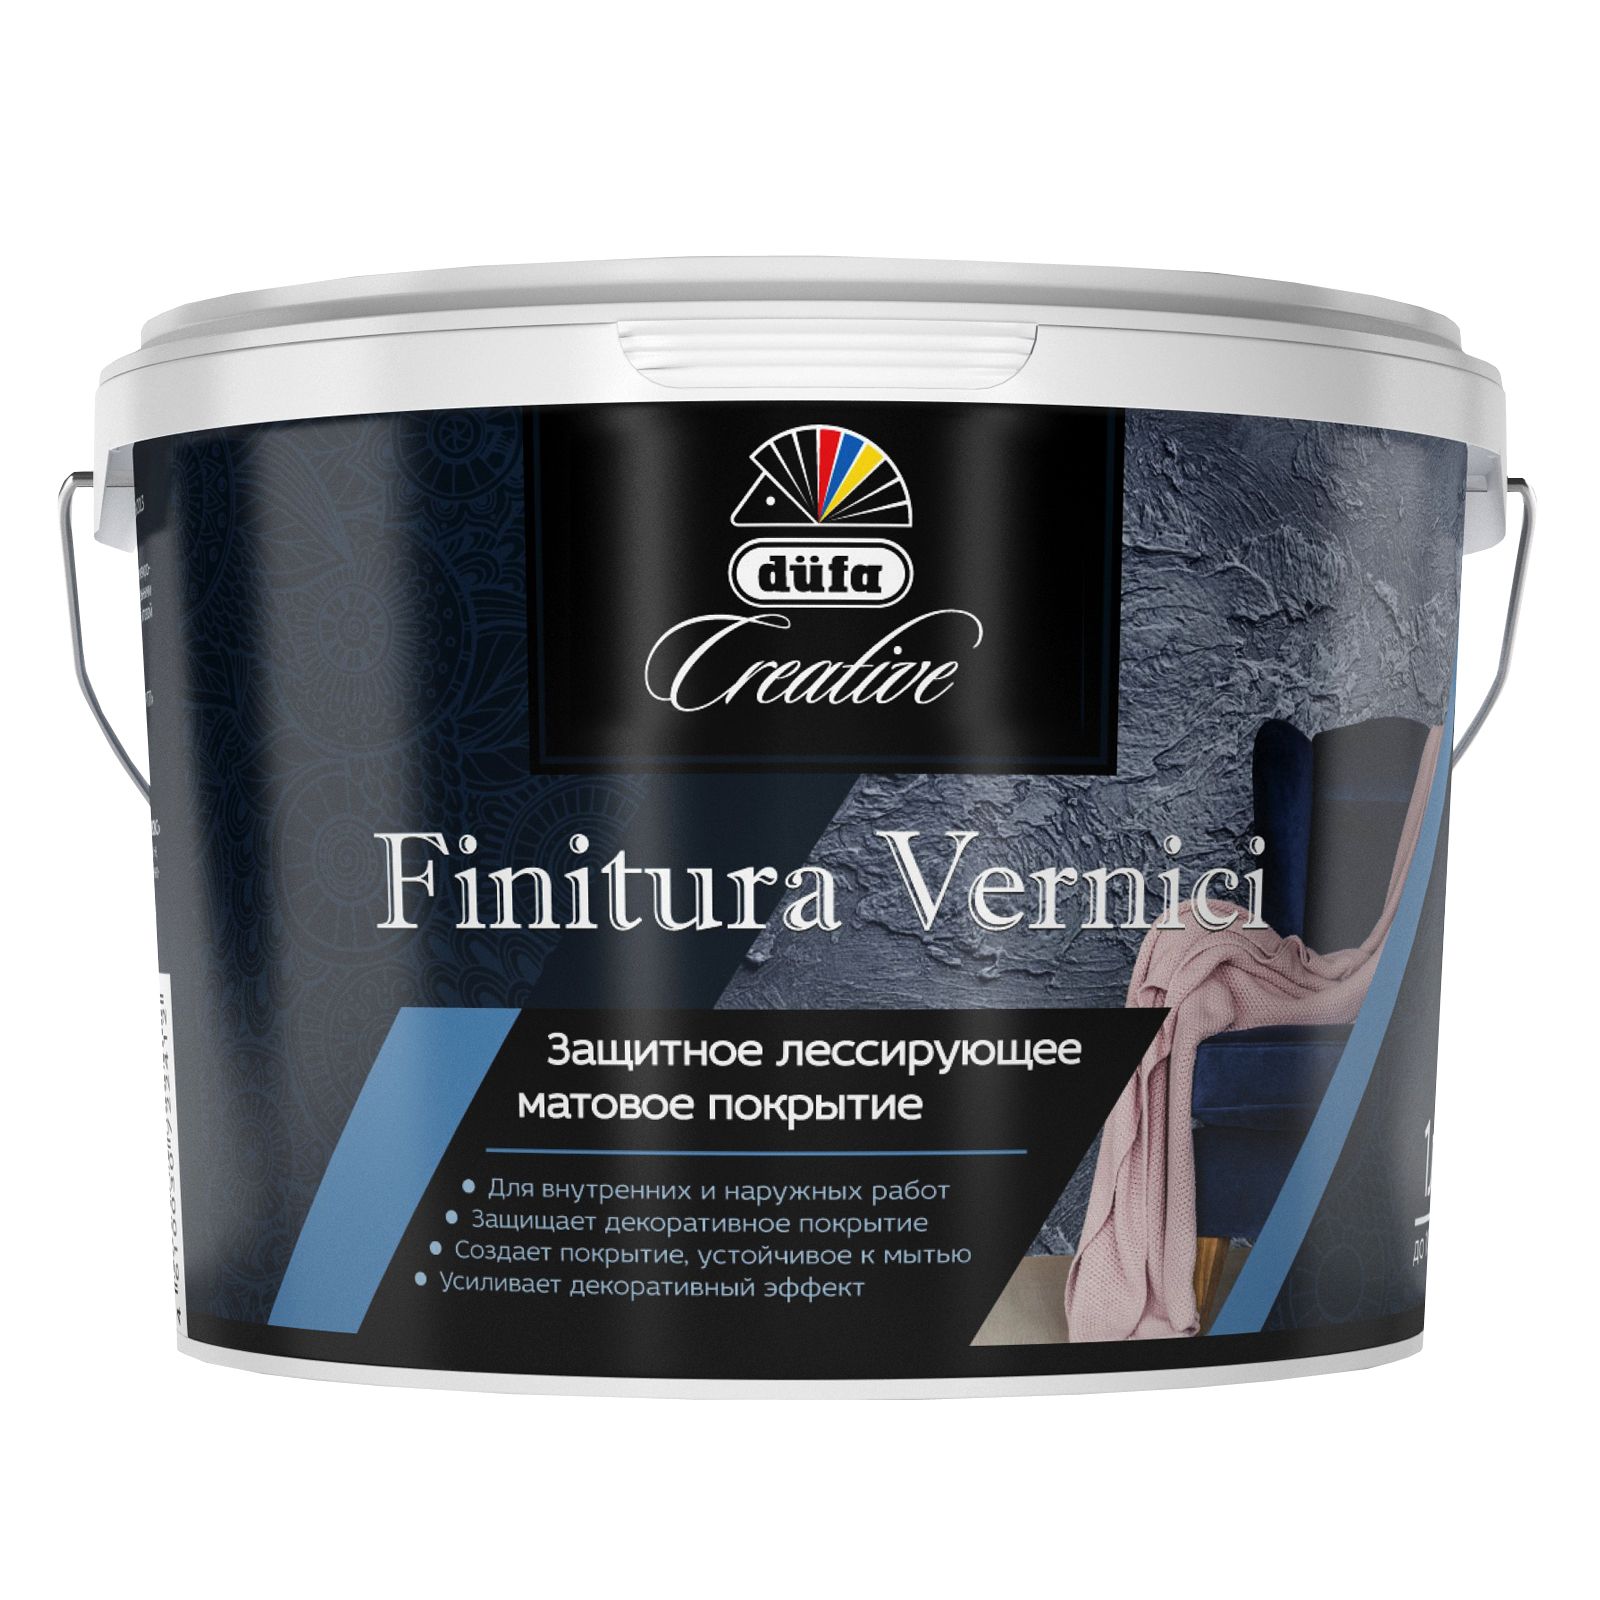 Защитное лессирующее матовое покрытие Dufa Creative Finitura Vernici 2,5 л. защитное средство для пластика nigrin